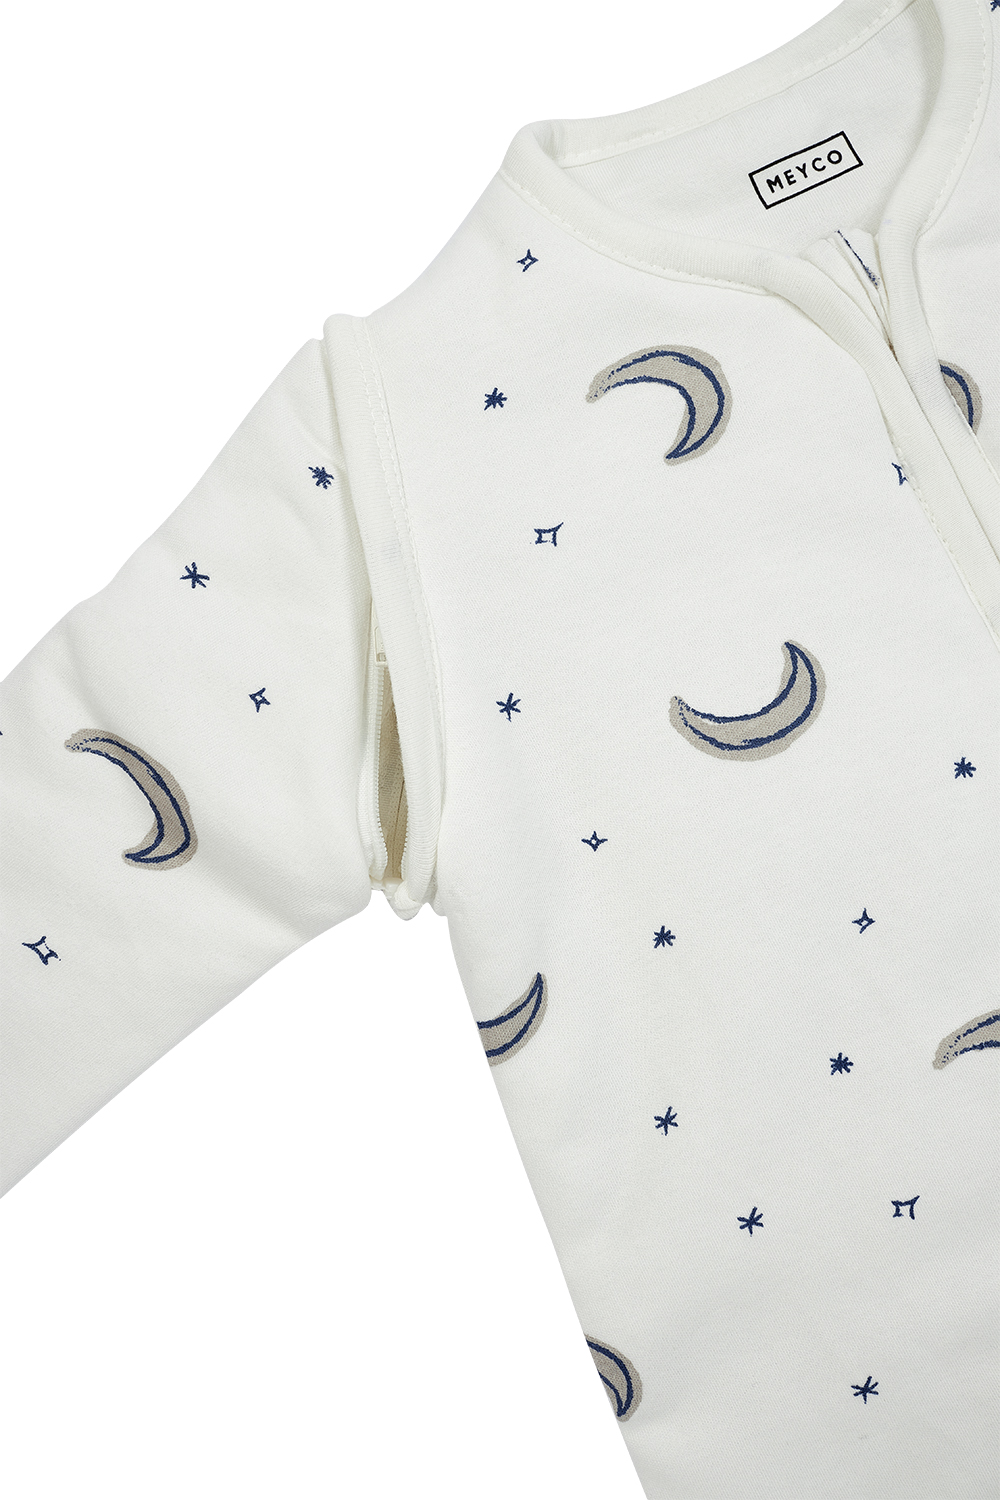 Babyschlafsack mit abnehmbaren Ärmeln Moon - indigo - 110cm